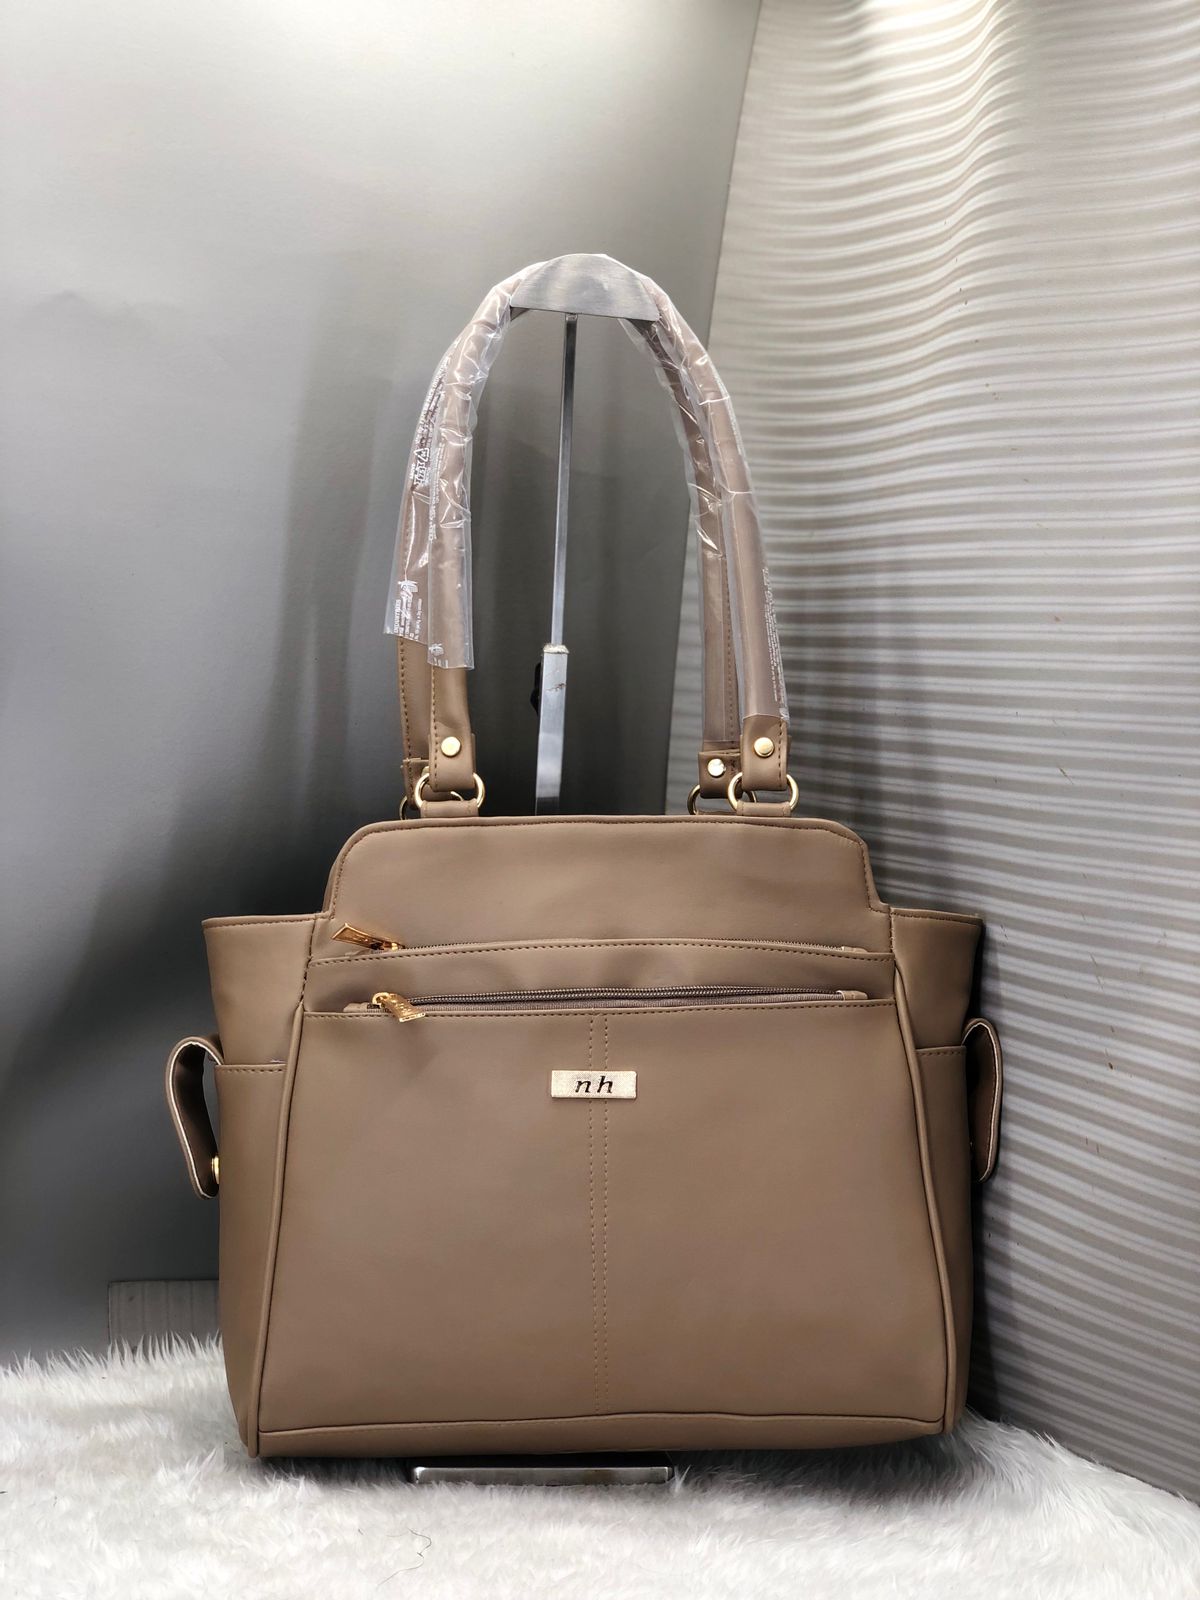 Fancy Shoulder/Handbag For Women And Girls